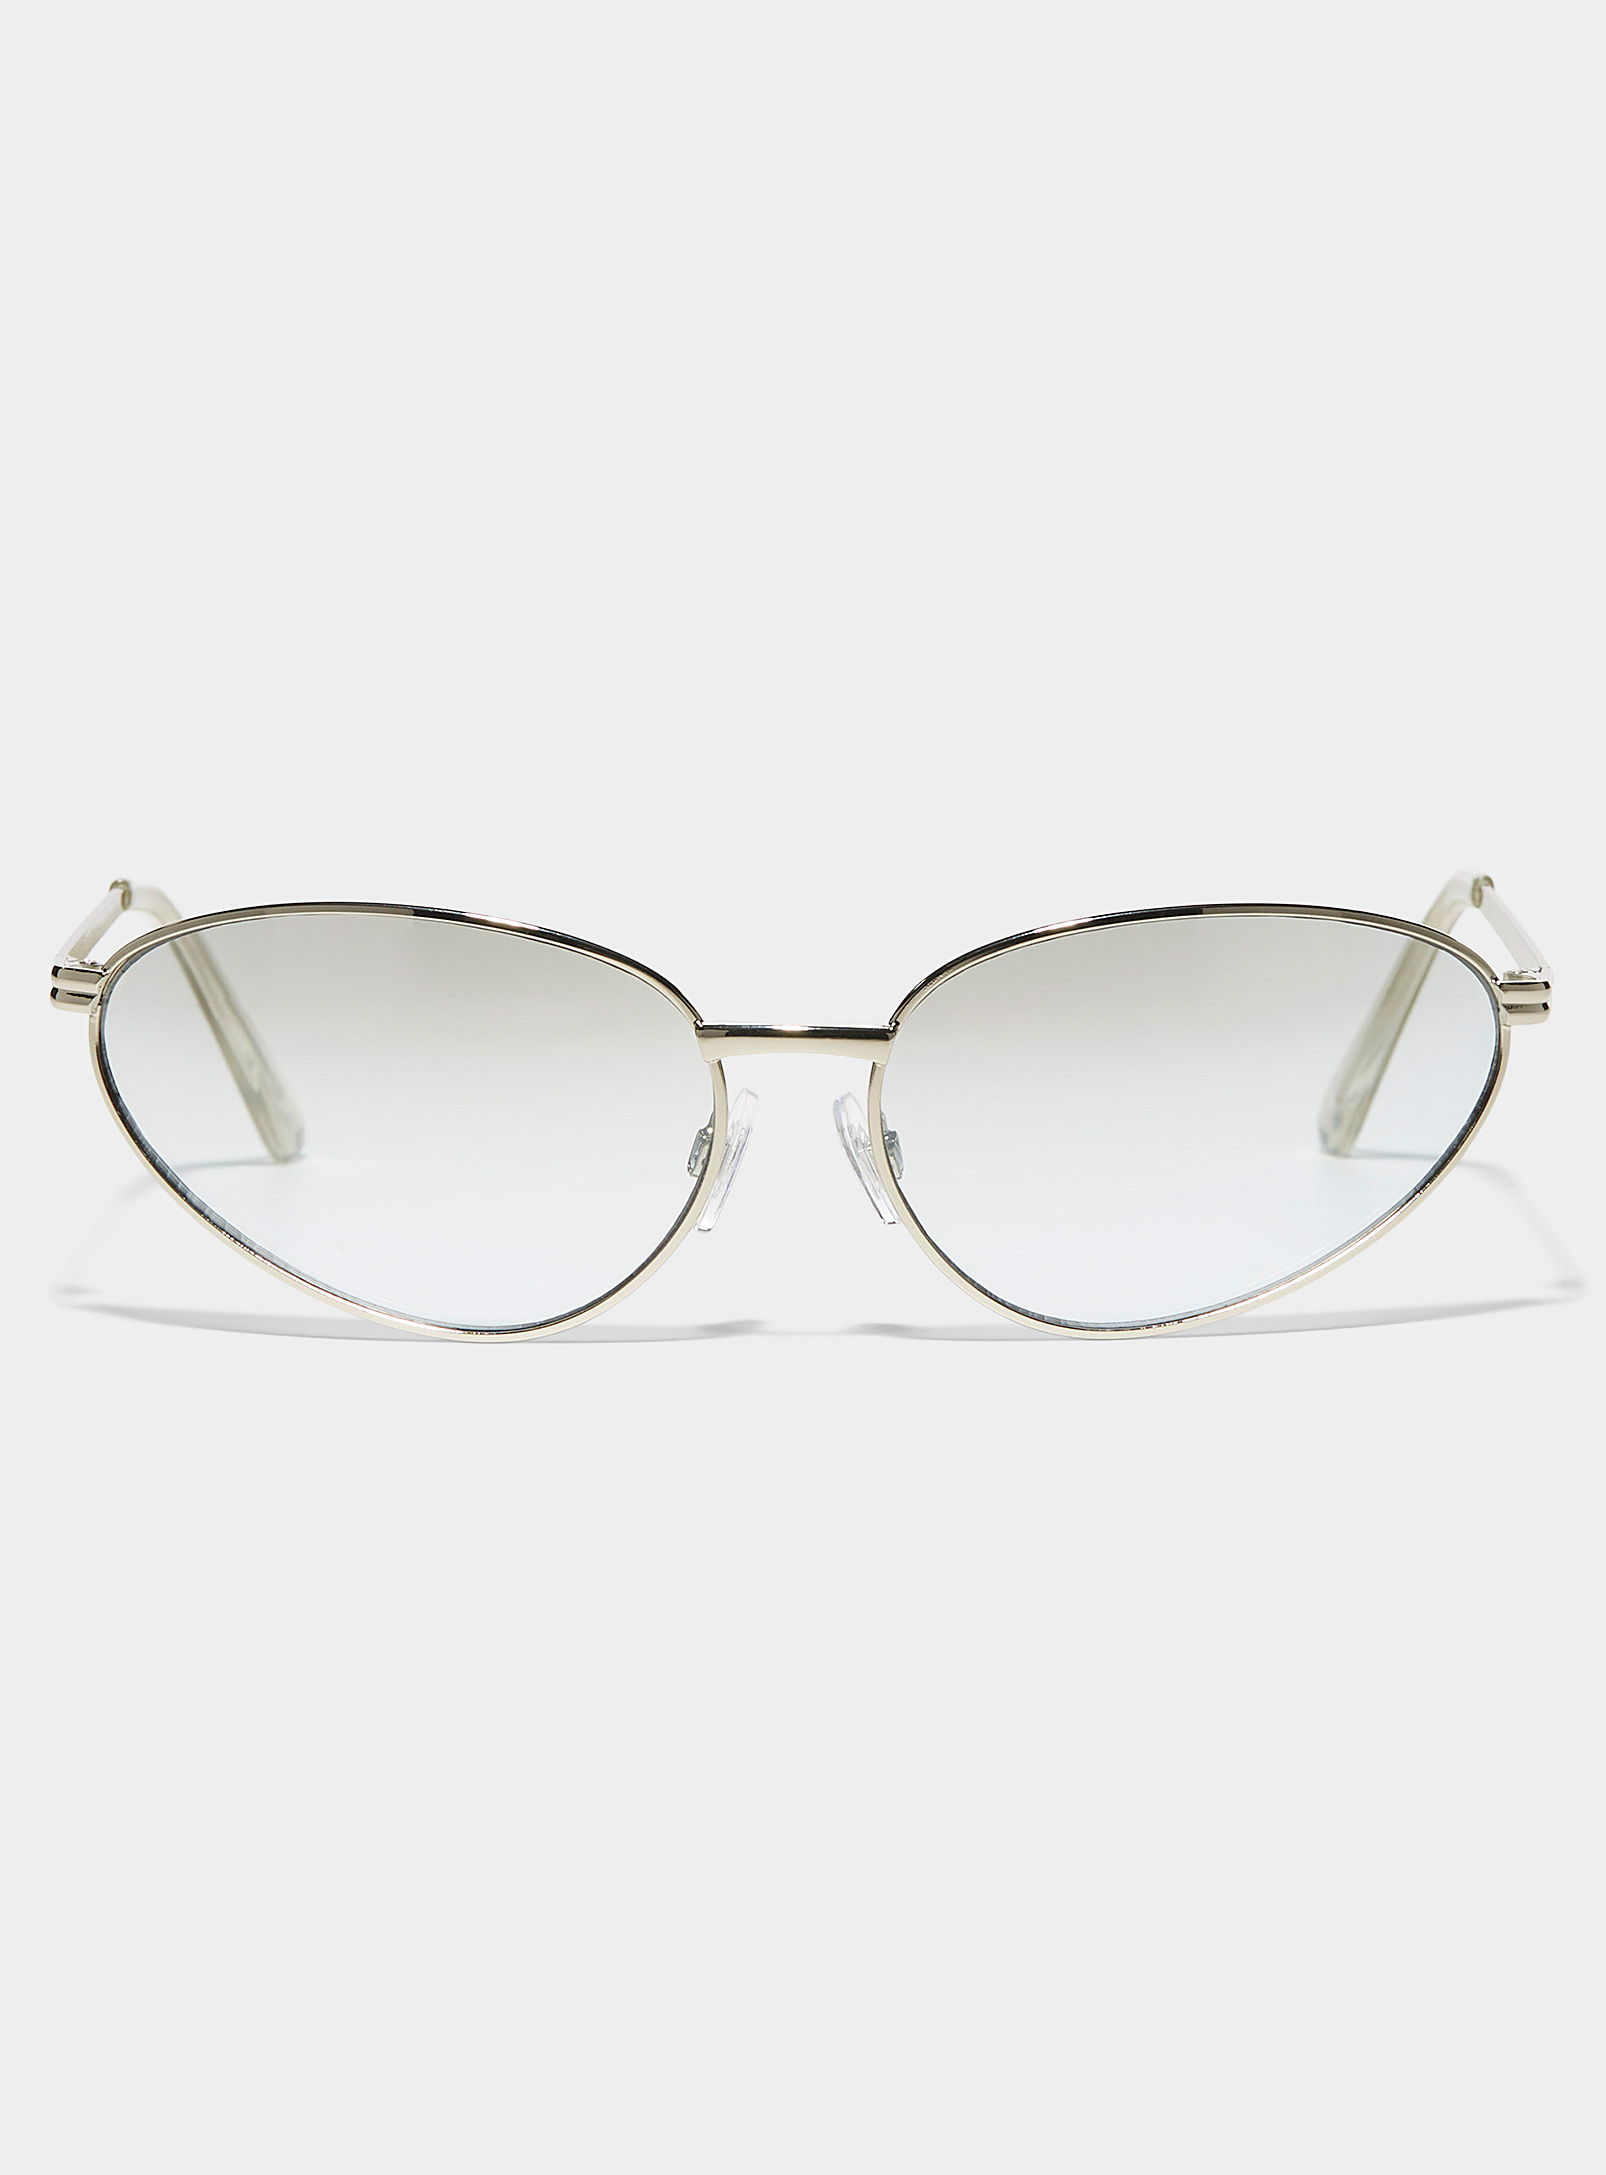 Le 31 Russo Oval Sunglasses In Metallic